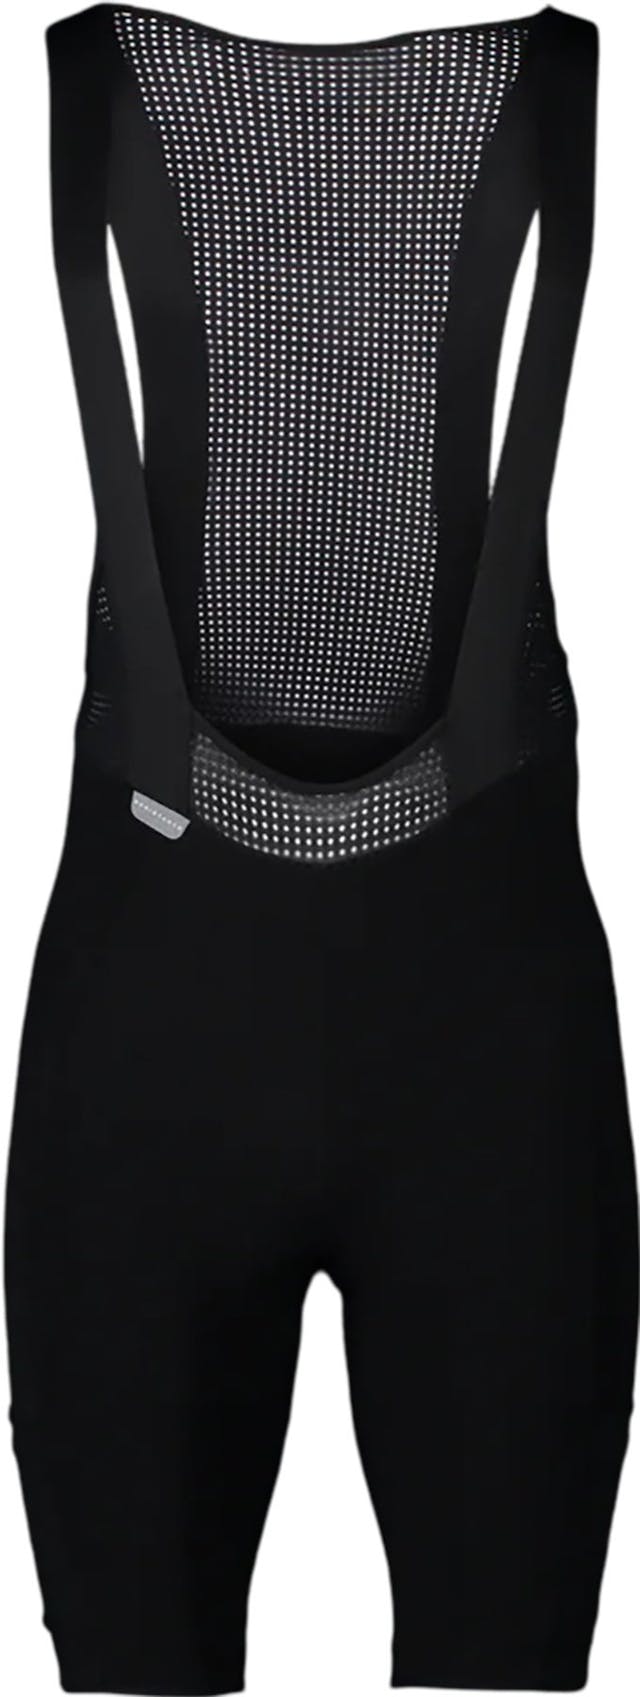 Product image for Ne-Plus Ultra VPDS Bib Shorts - Men's